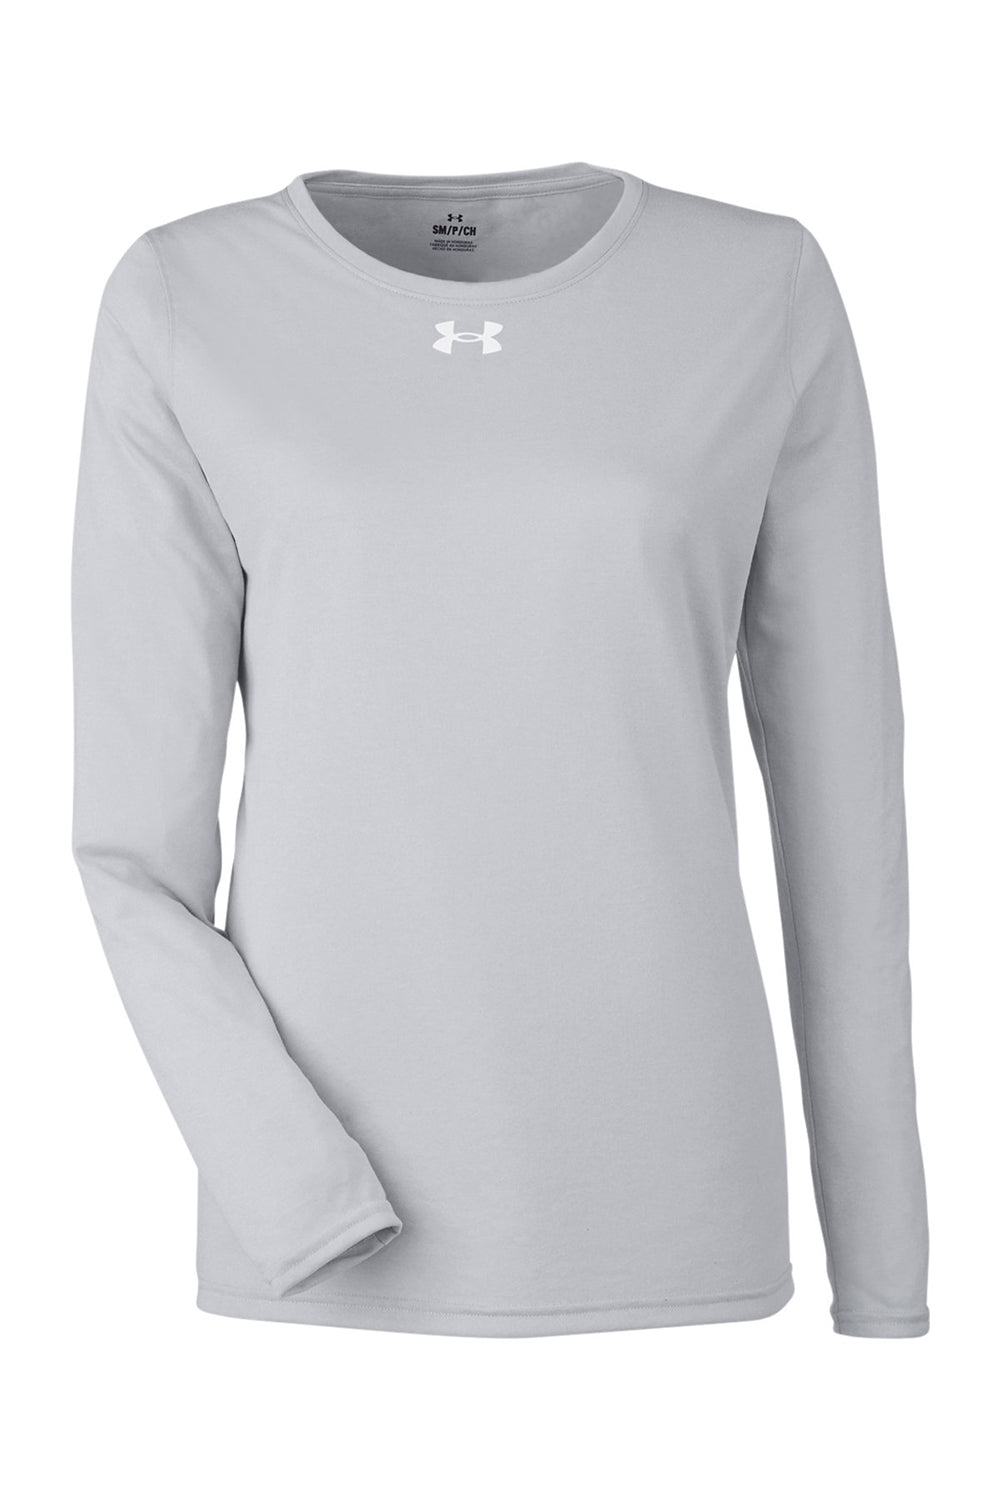 Under Armour 1376852 Womens Team Tech Moisture Wicking Long Sleeve Crewneck T-Shirt Mod Grey Flat Front